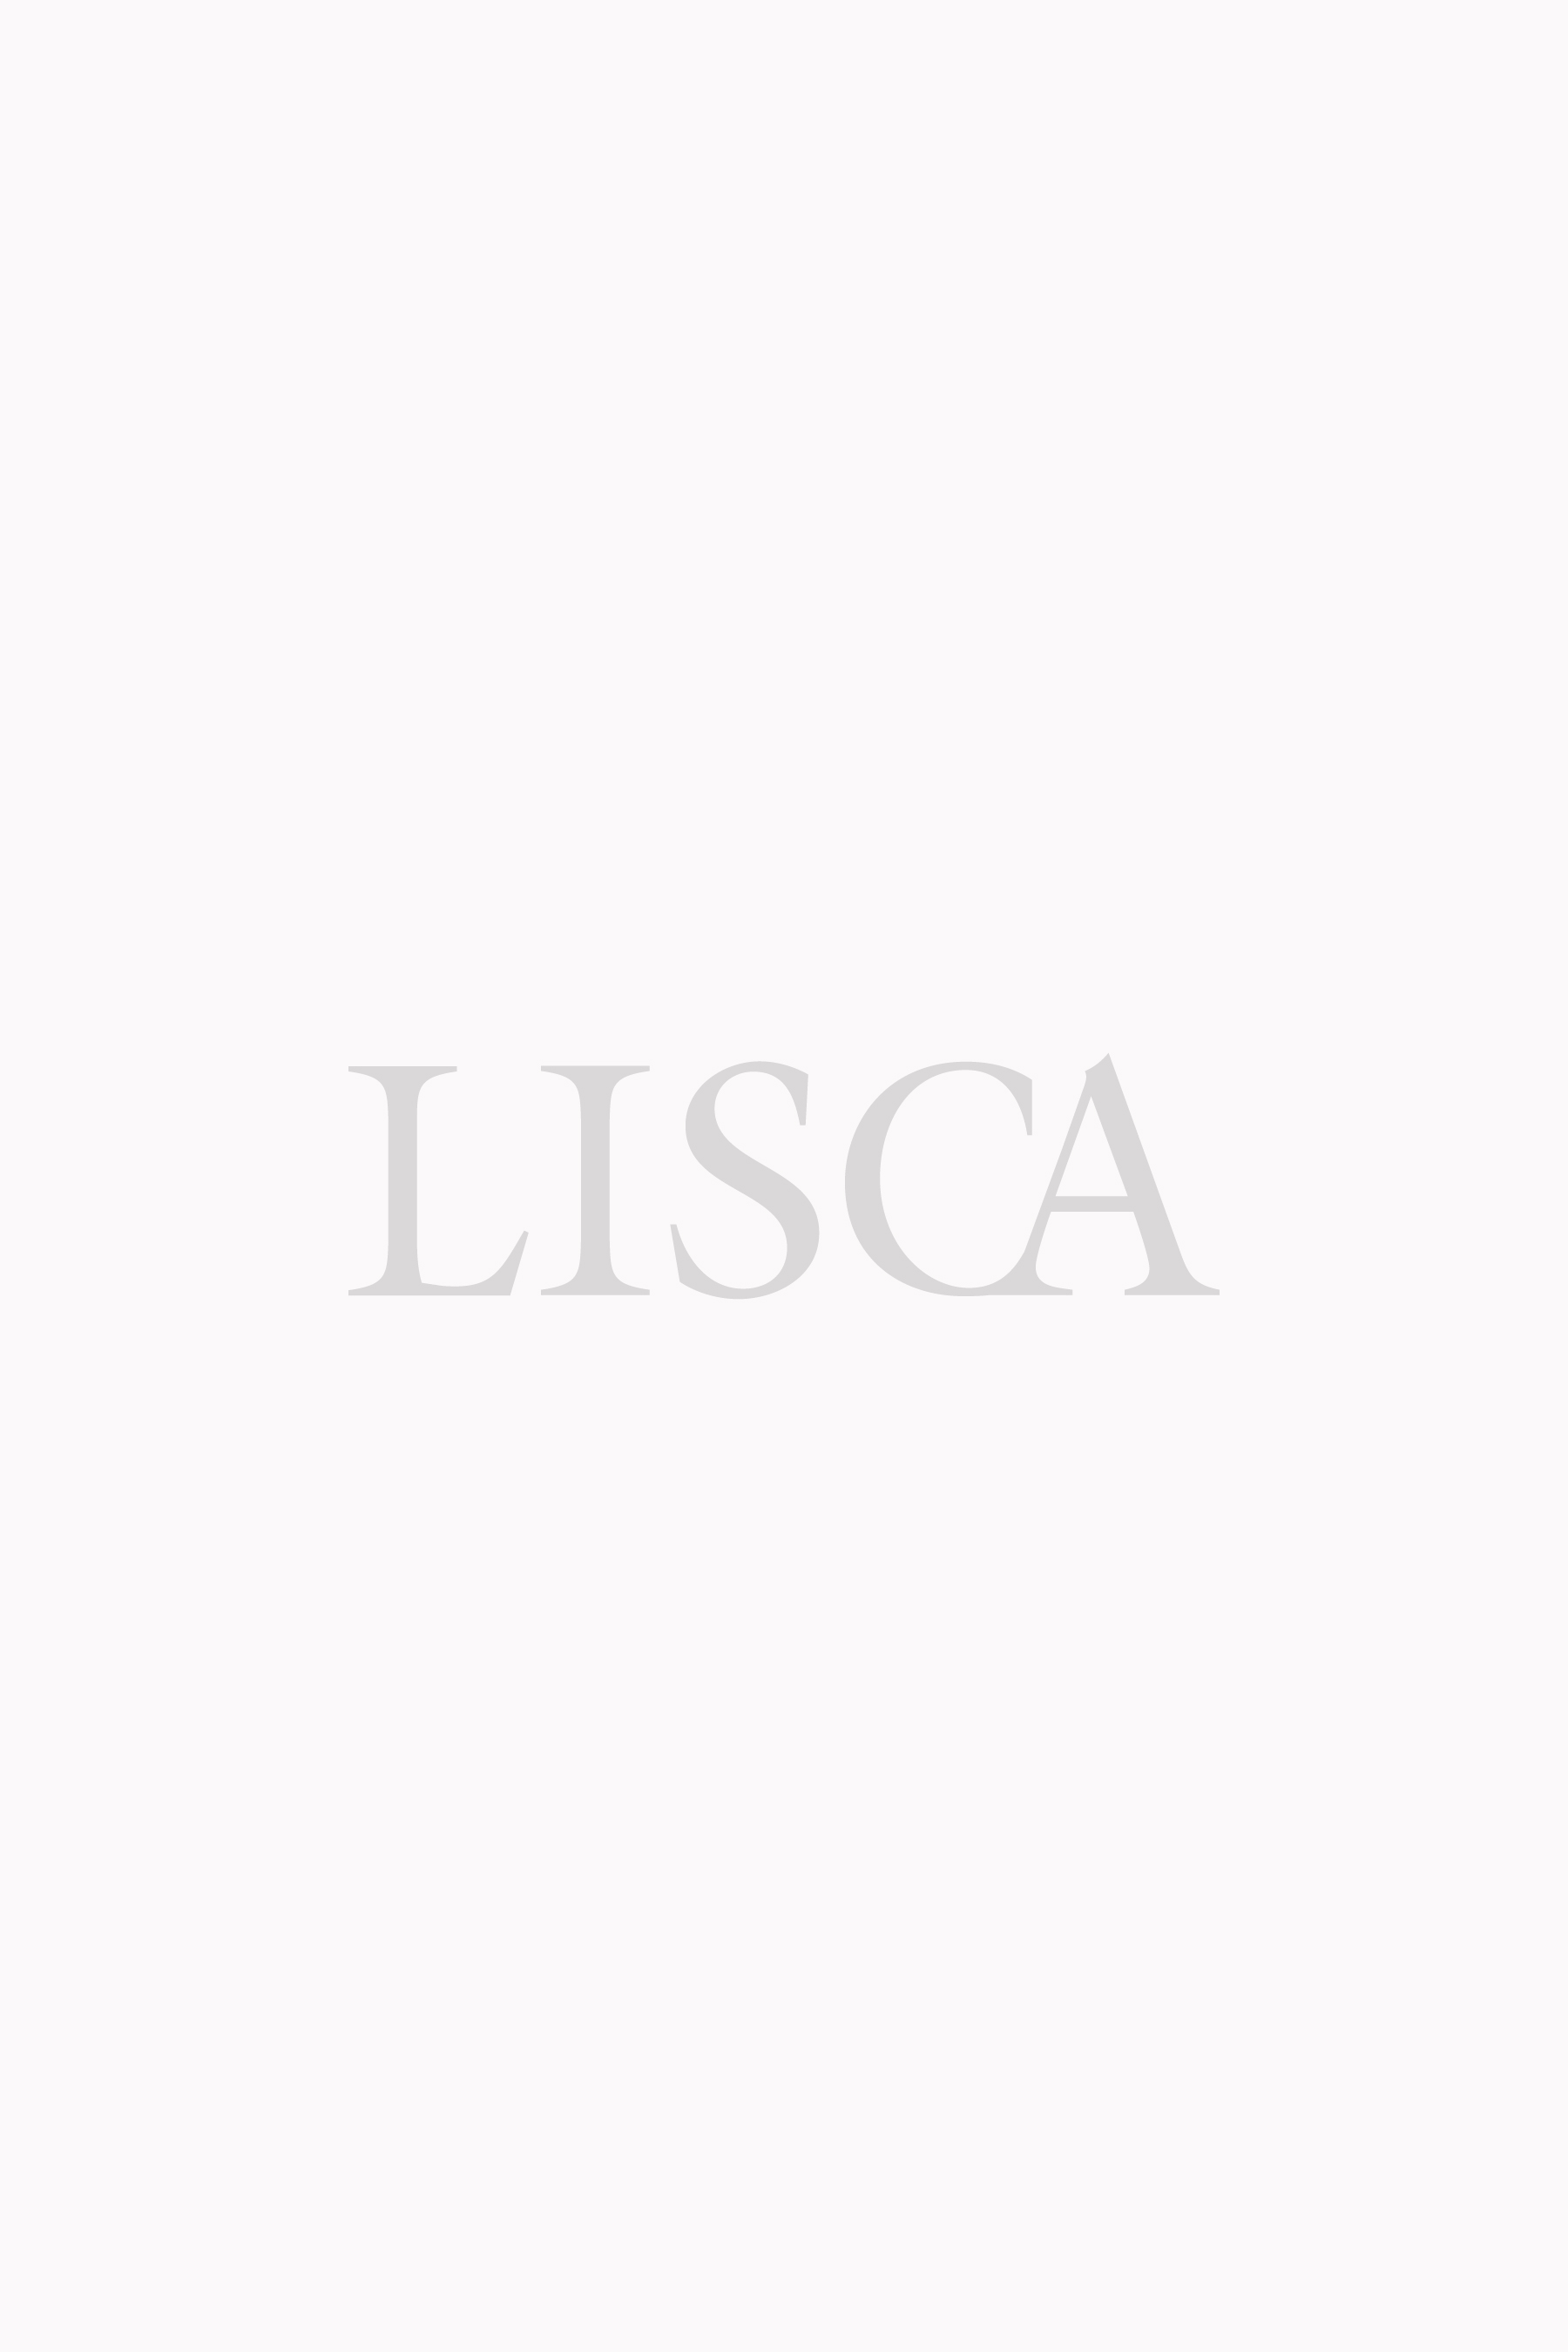 Was es vor dem Kaufen die Lisca bh zu bewerten gilt